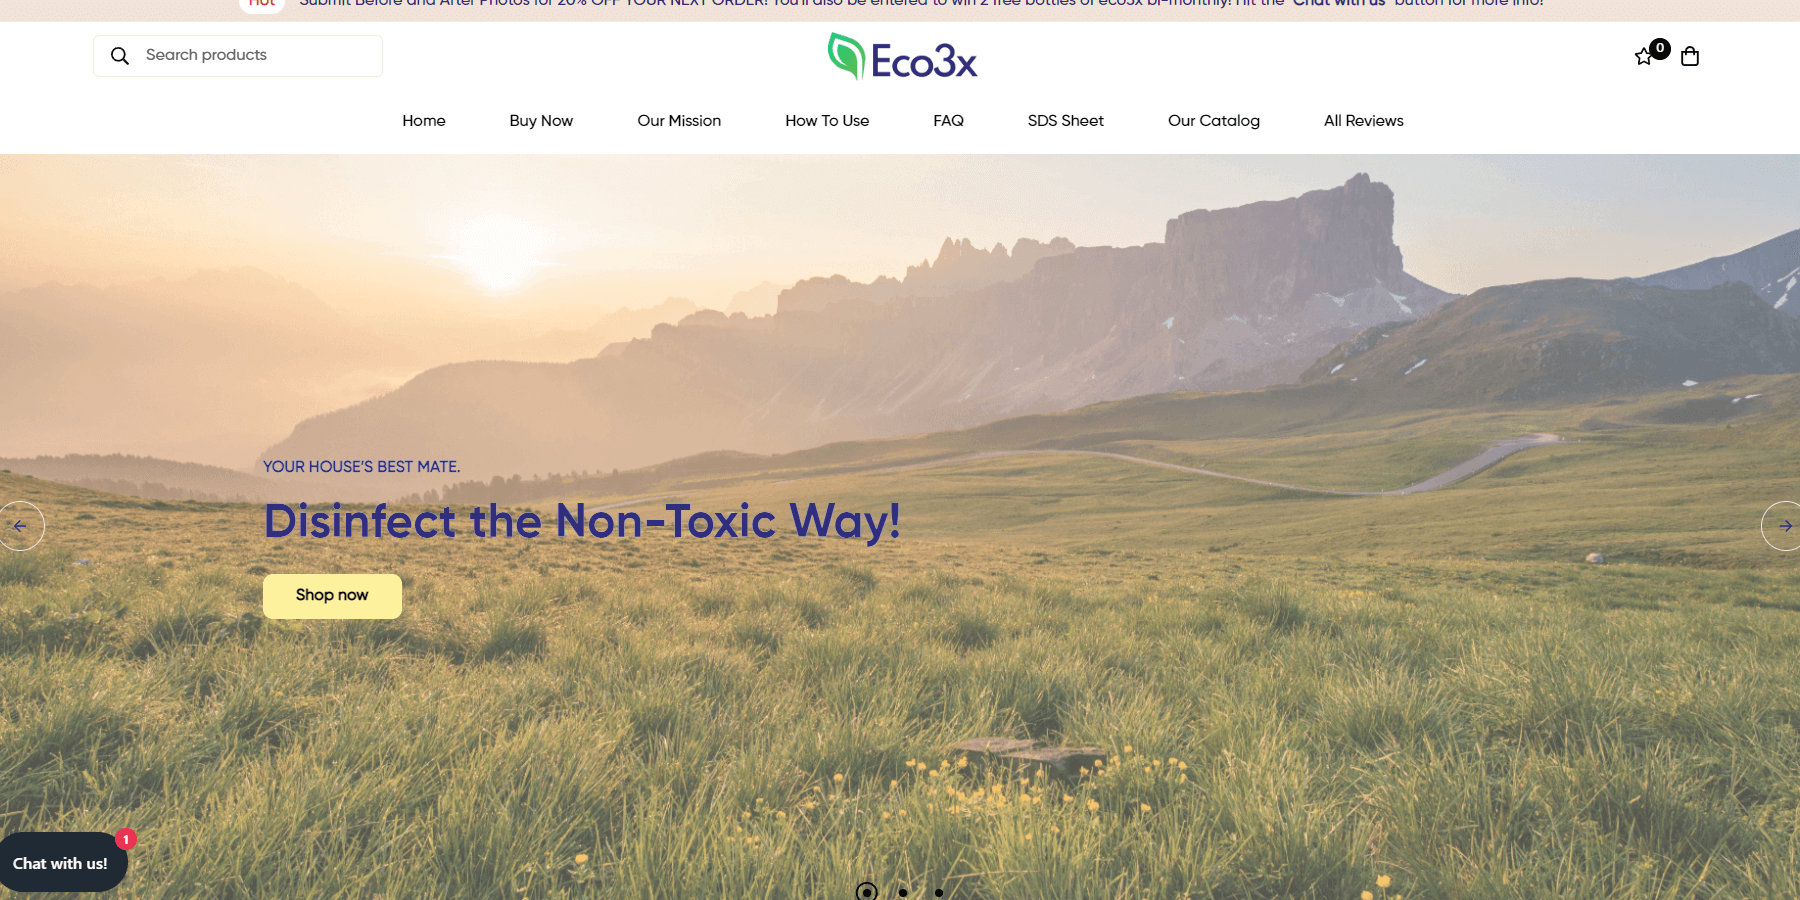 Eco3x site image.